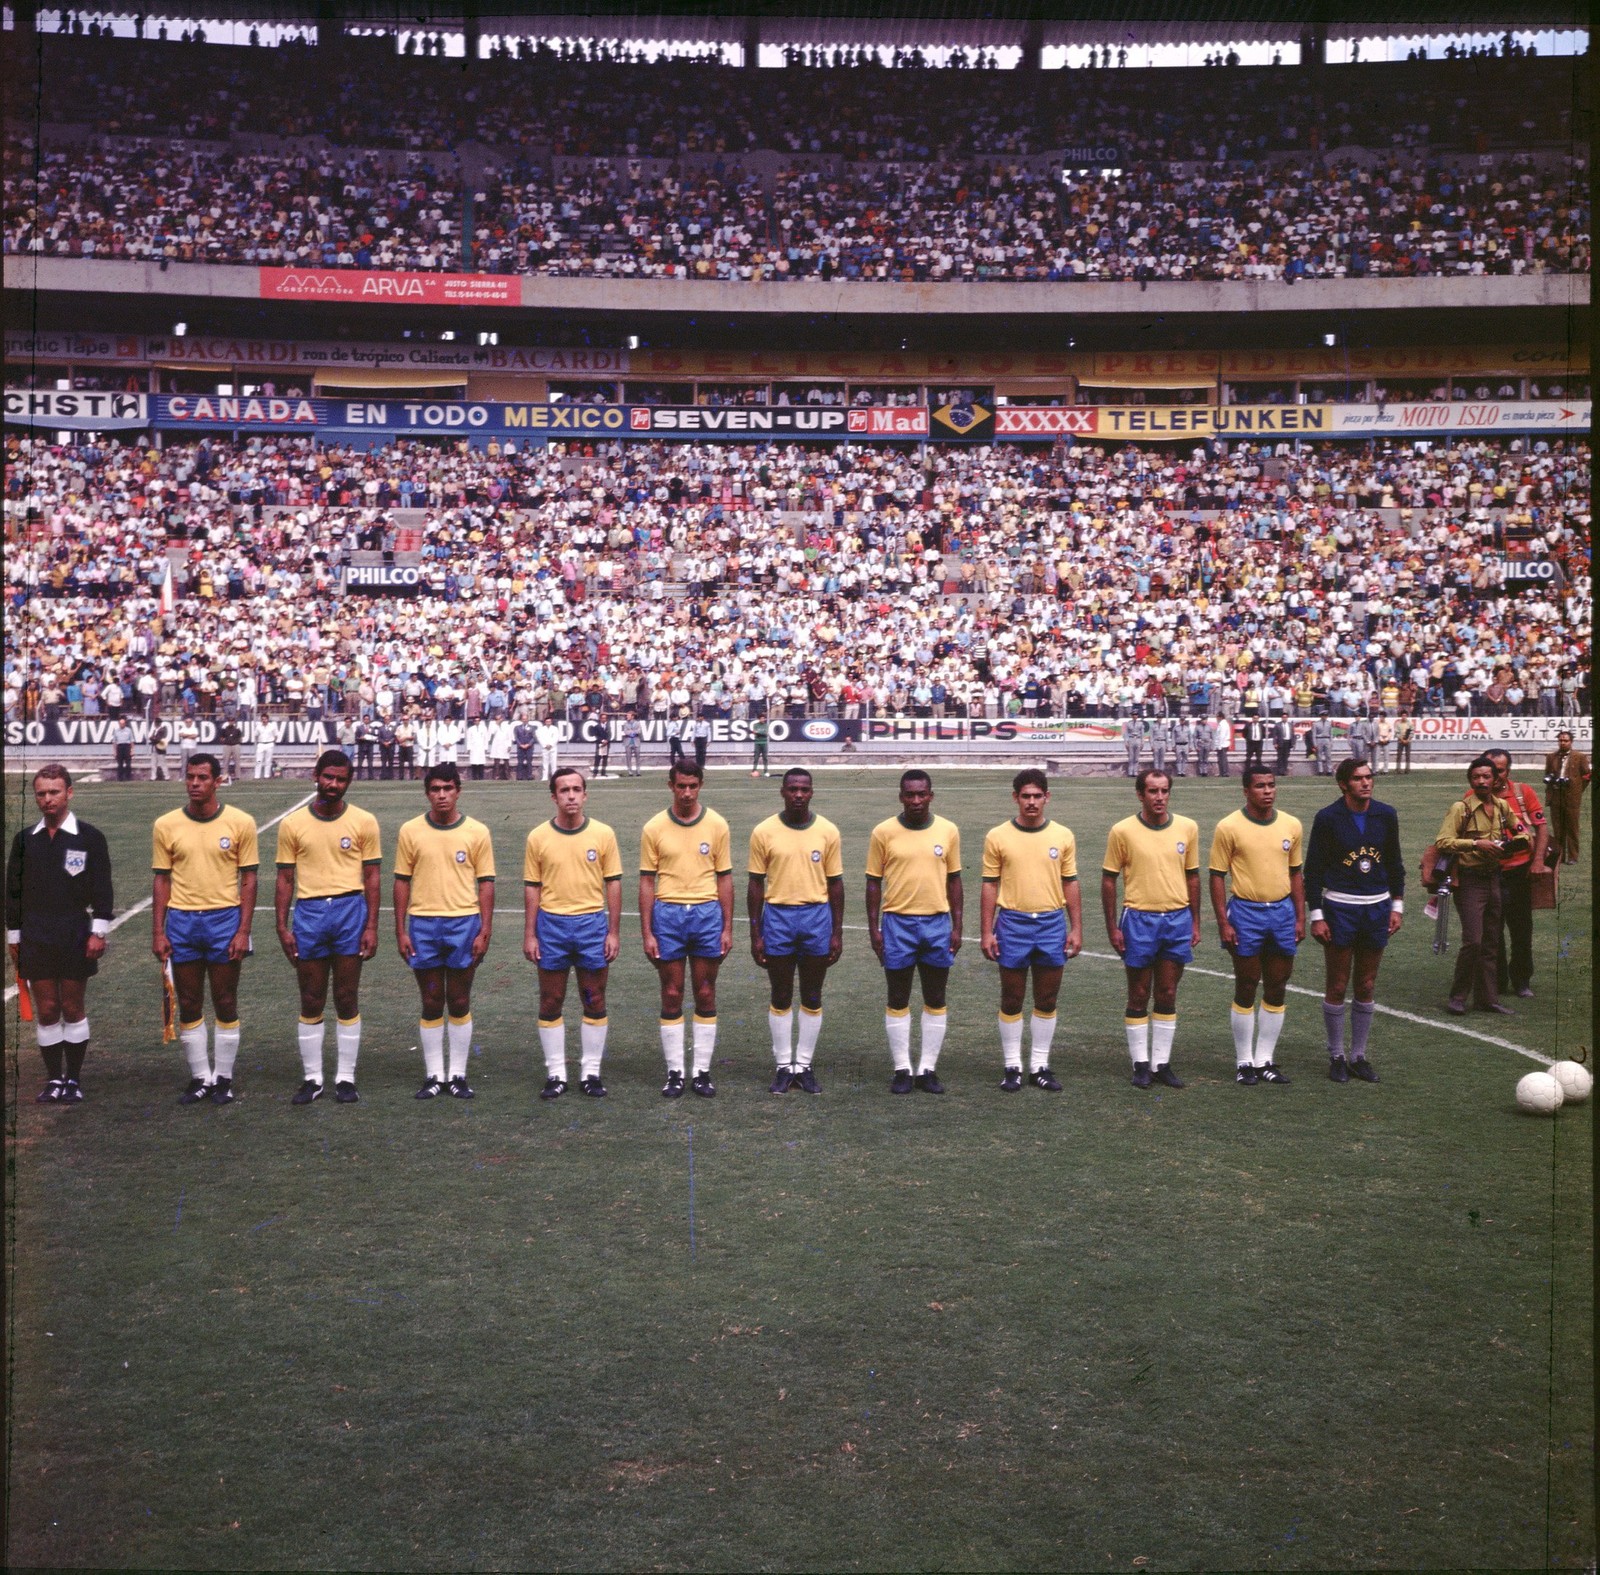 Copa de 1970: formação do time brasileiro antes da partida final contra o time italiano — Foto: Reprodução/ TV Globo